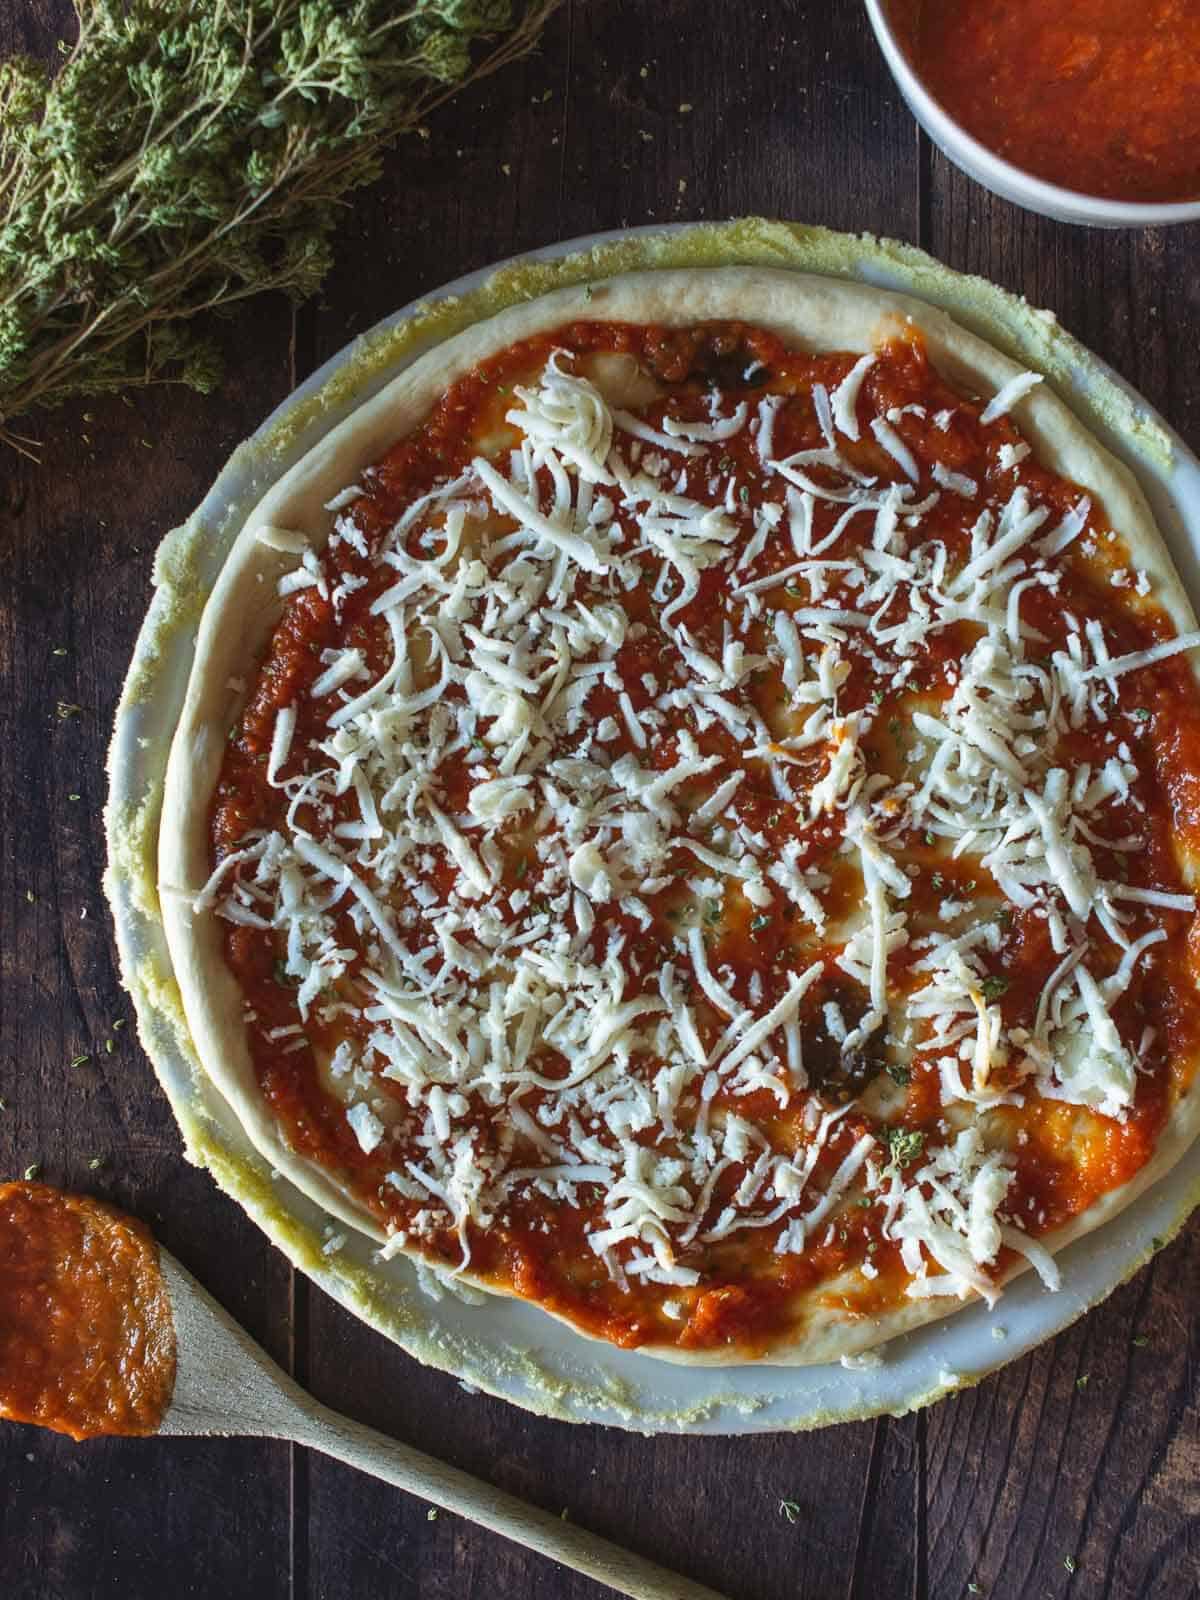 pizza margherita with shredded mozzarella.